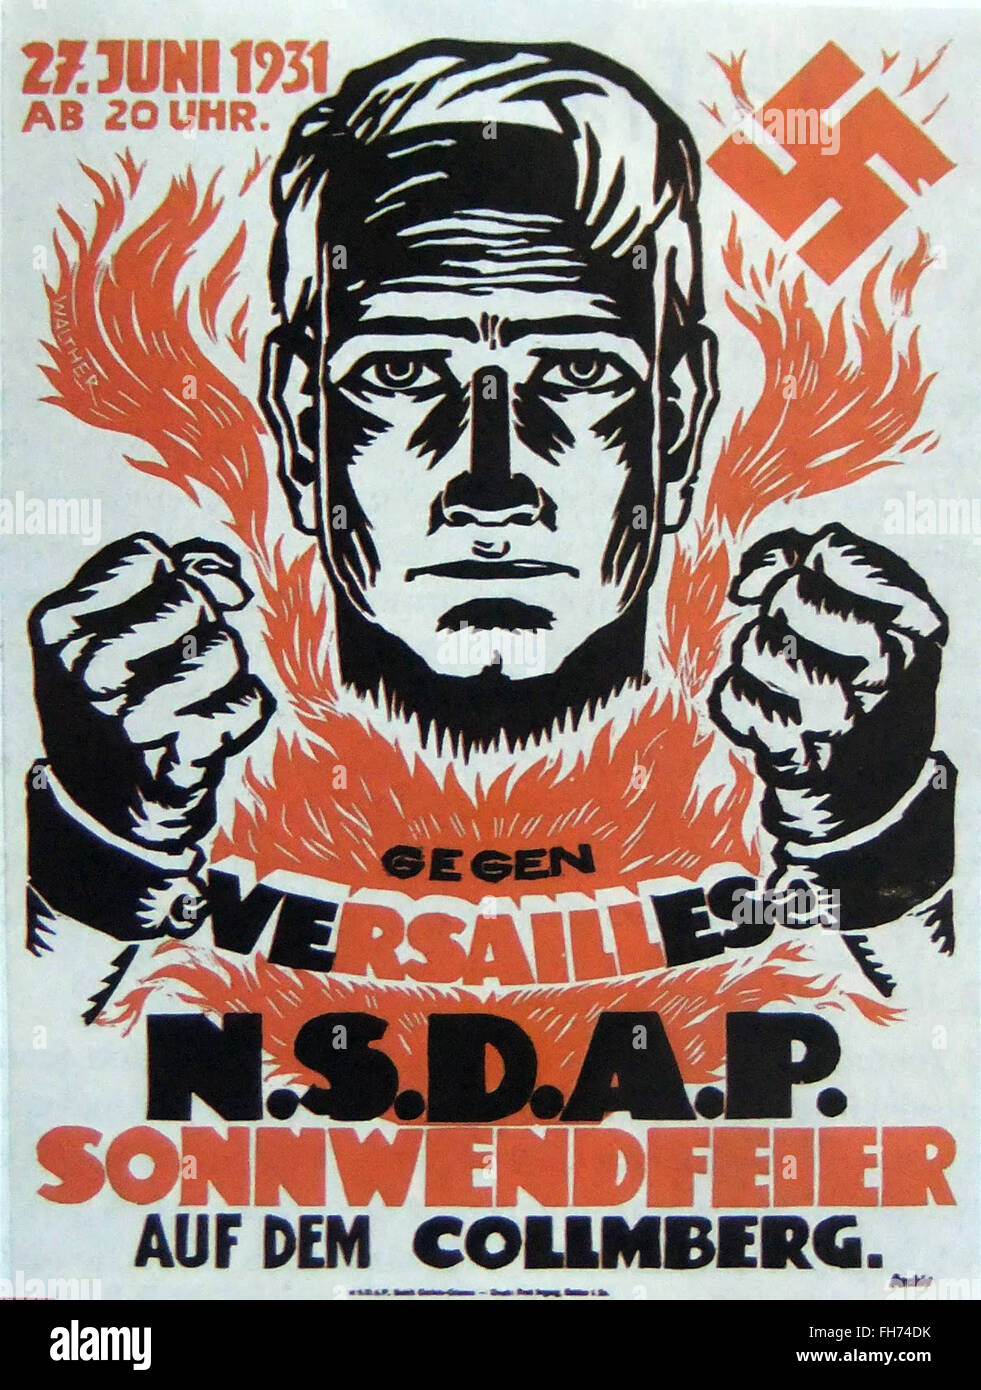 Gegen Versailles n_s_d_a_p sonnwendfeier - German Nazi Propaganda Poster - 1931 Stock Photo